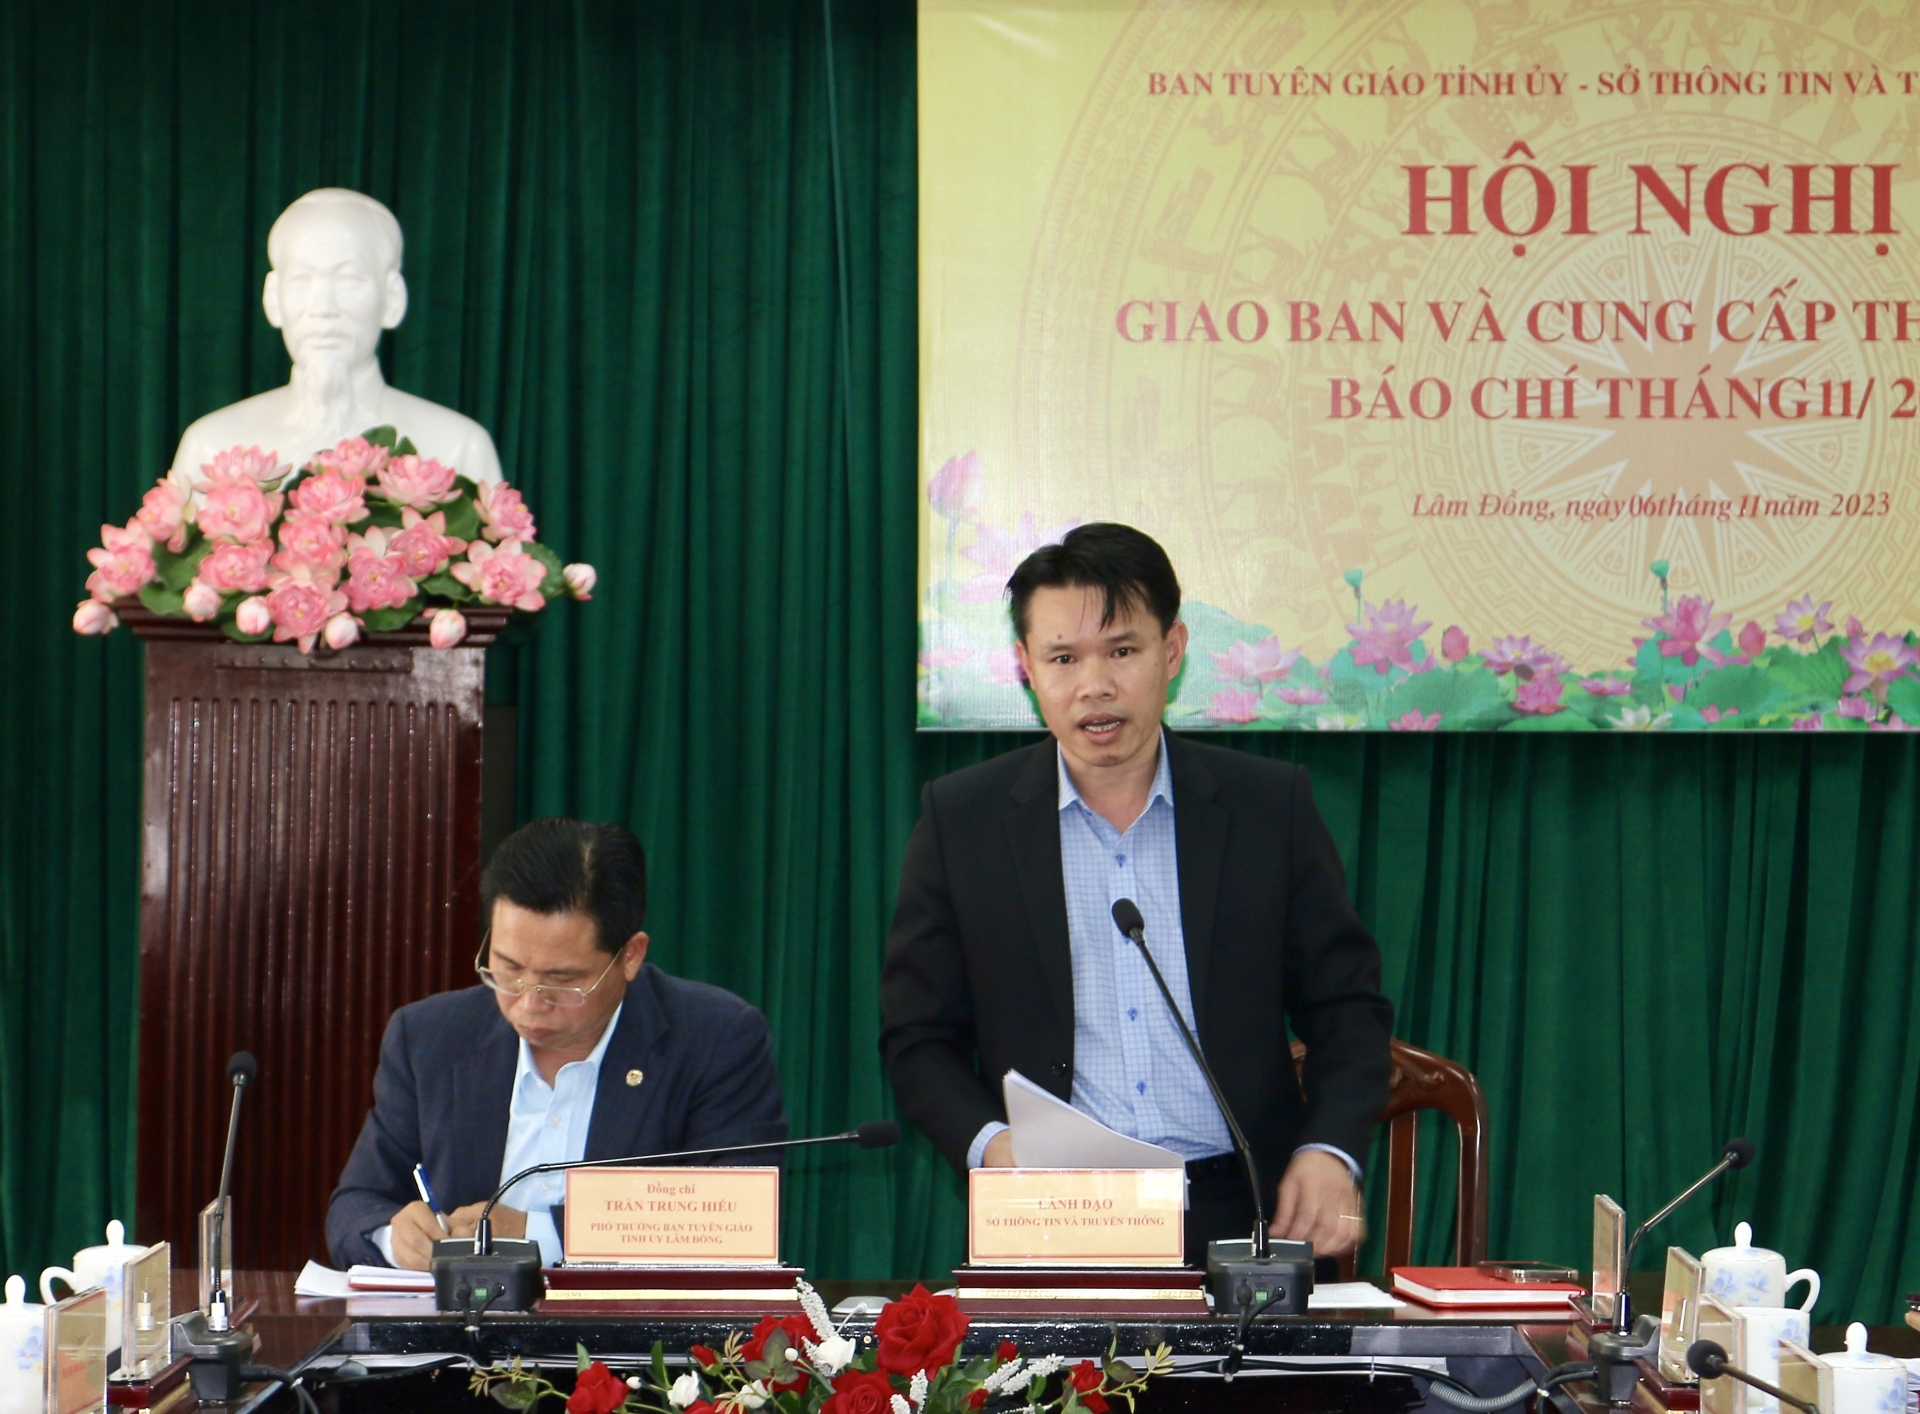 Phó Giám đốc Sở Thông tin và Truyền thông Vương Tôn Kiên thông tin tình hình hoạt động báo chí tháng 10/2023